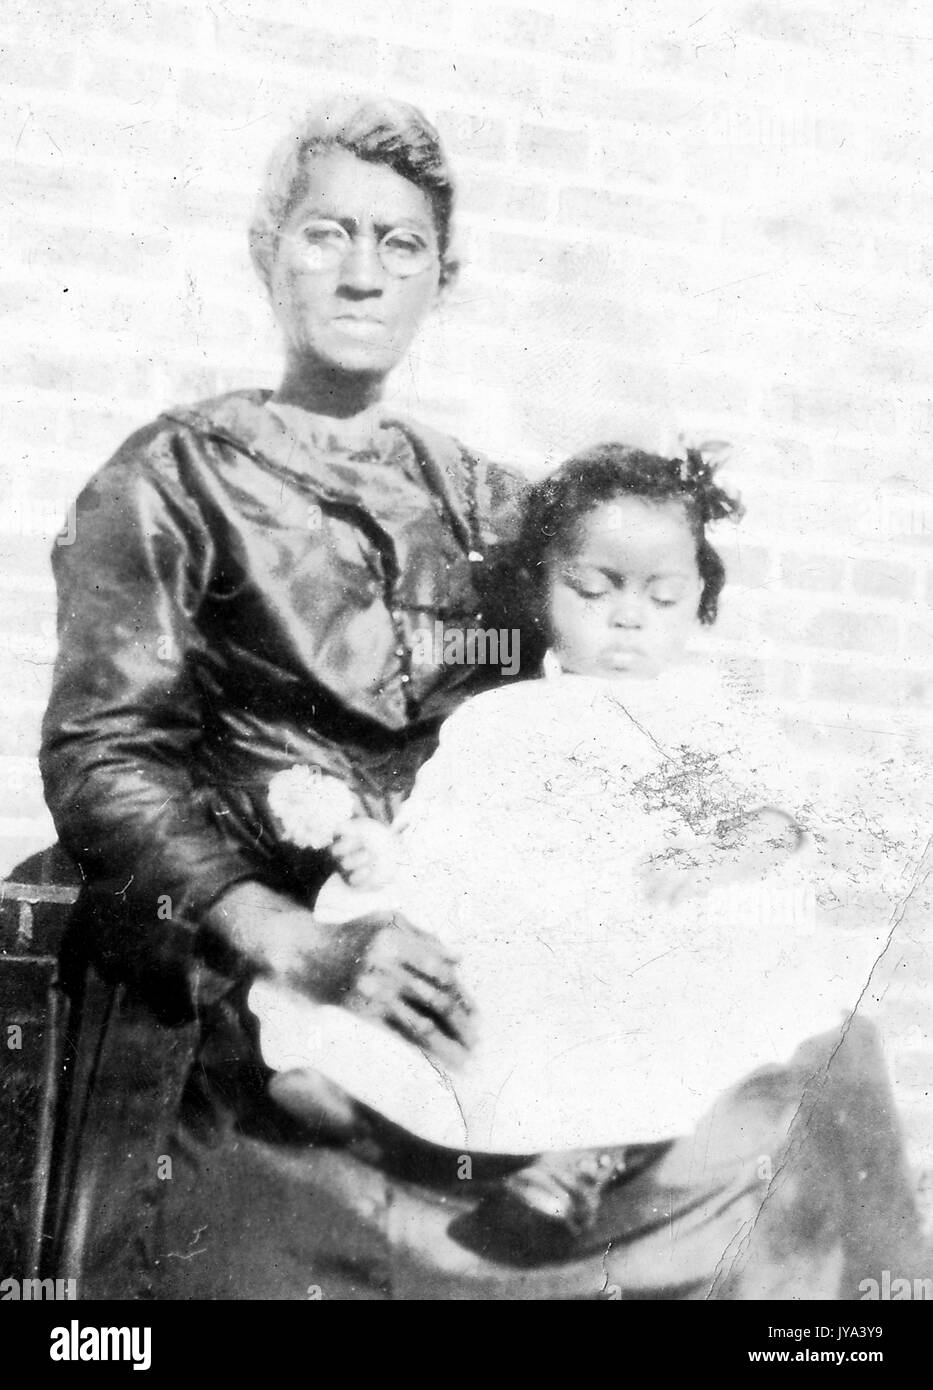 African American grand-mère et petit-fils, la grand-mère portant des lunettes avec ses cheveux en chignon, le jeune enfant assis sur ses genoux et vêtue d'une robe blanche avec ses yeux fermés, 1915. Banque D'Images